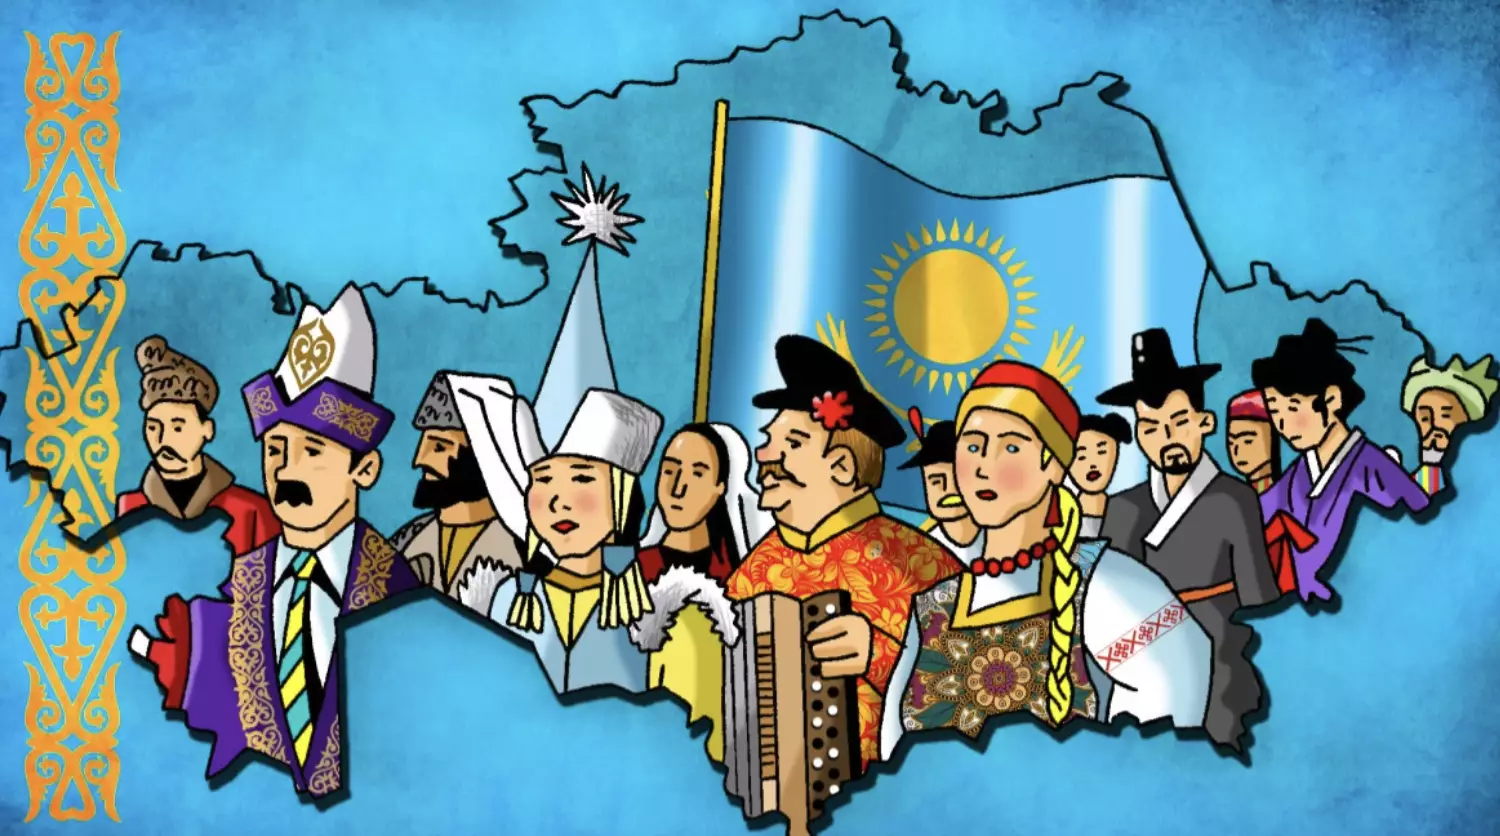 Праздник единства народа отмечают в Казахстане